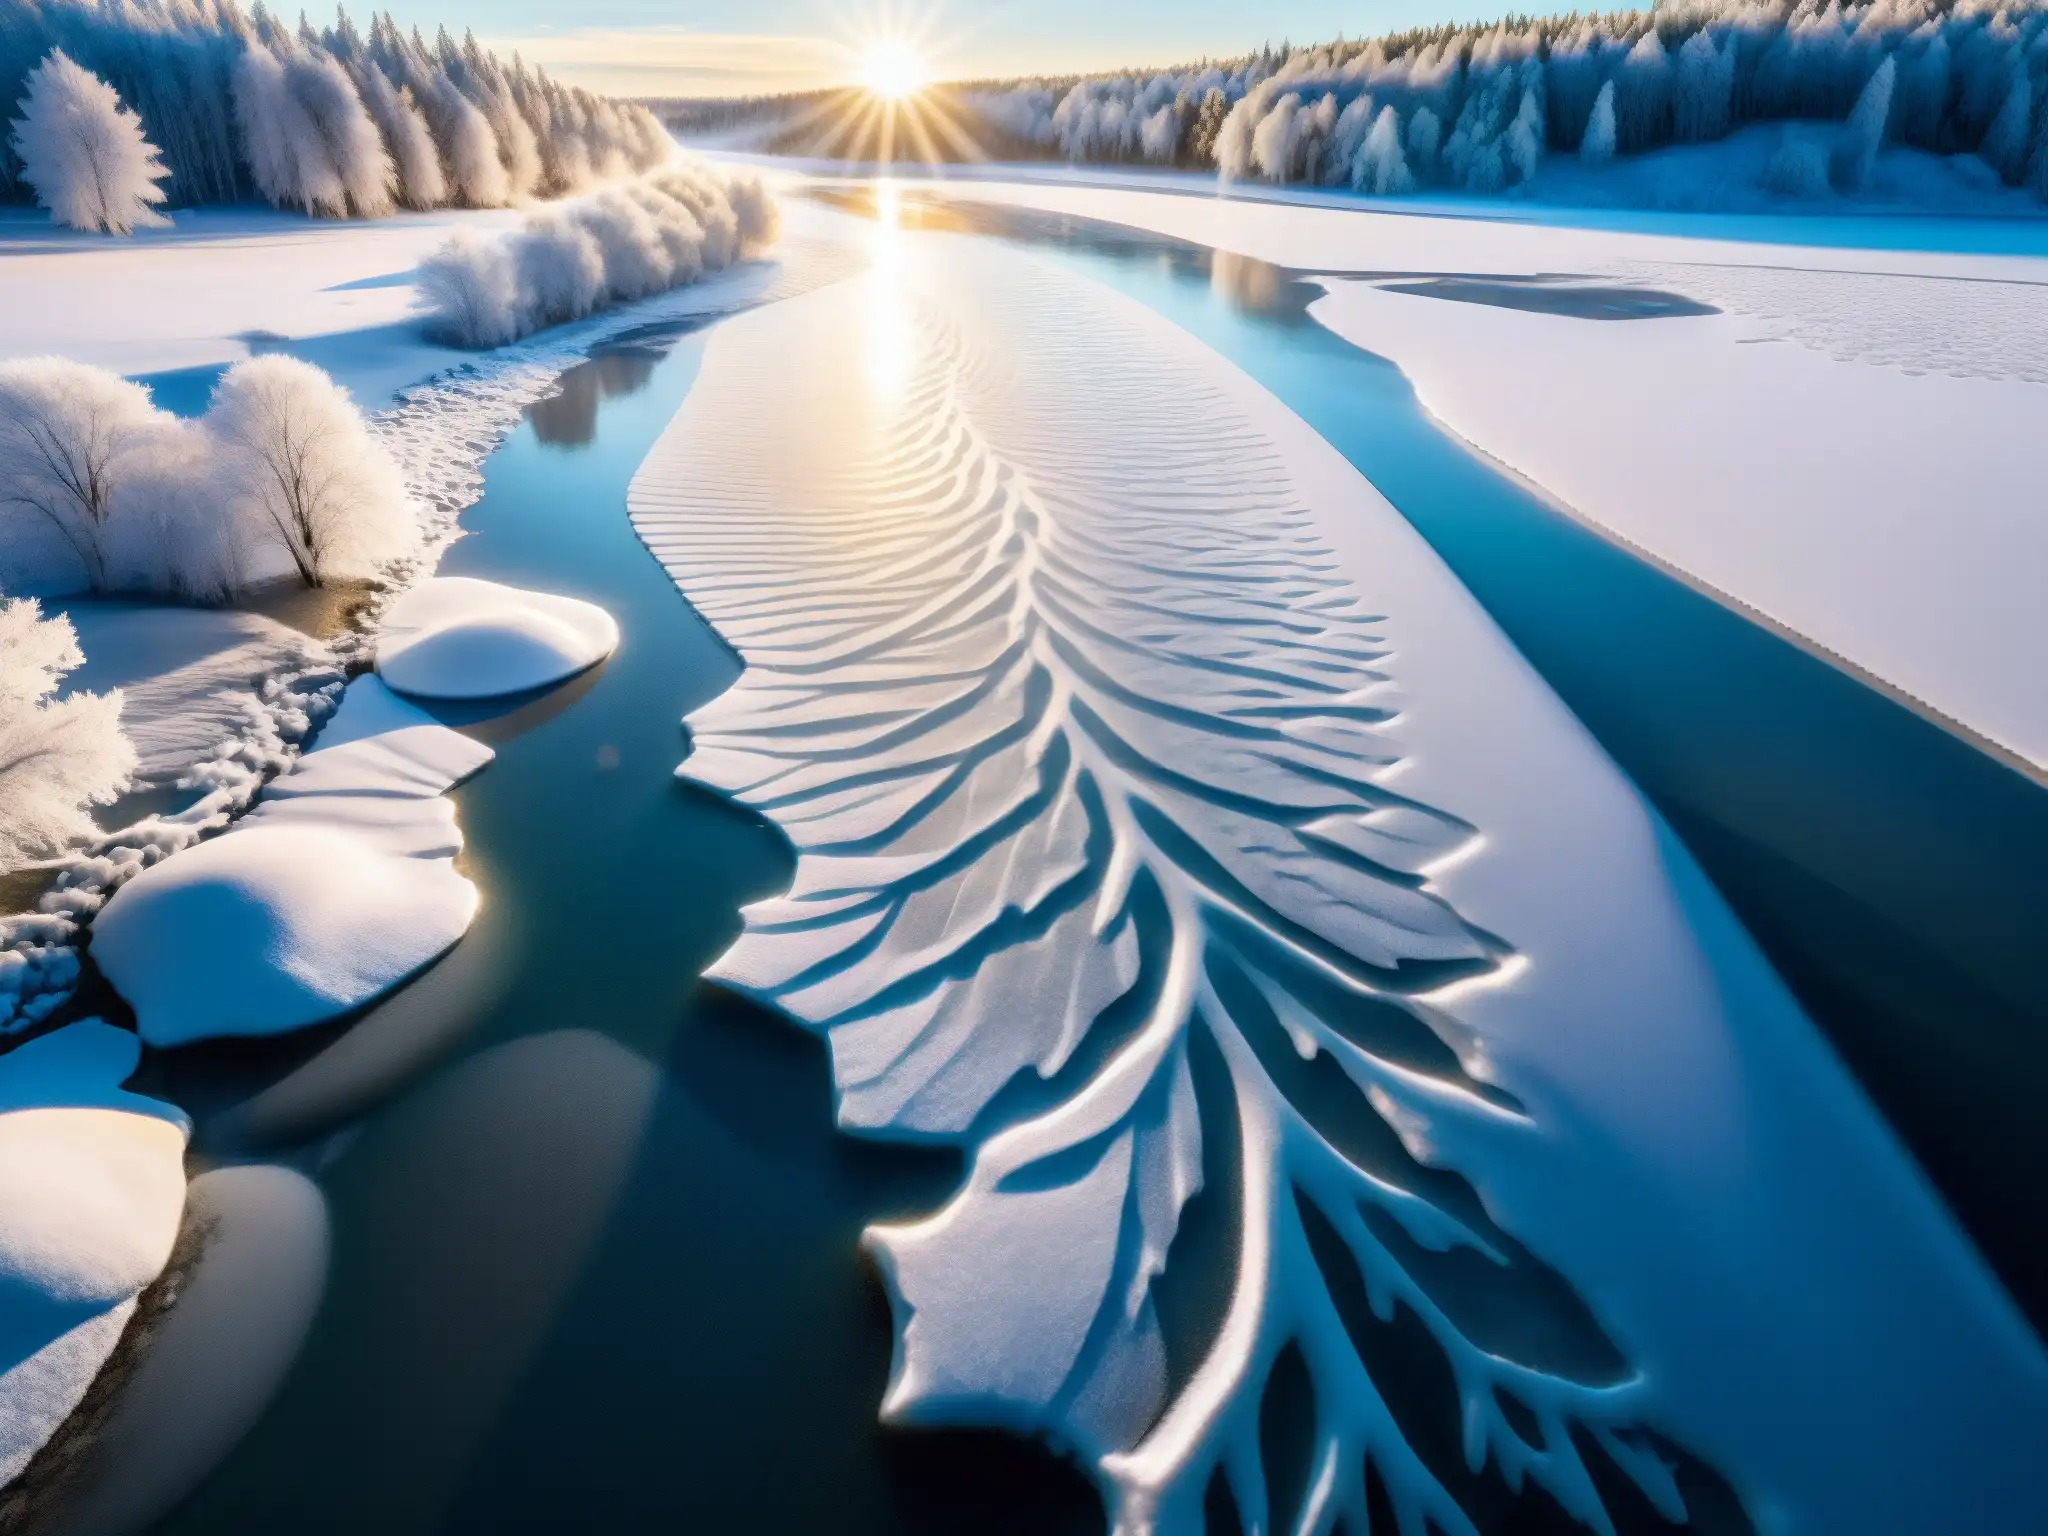 Un río congelado en América del Norte muestra misteriosos círculos de hielo, creando una atmósfera cautivadora y surrealista